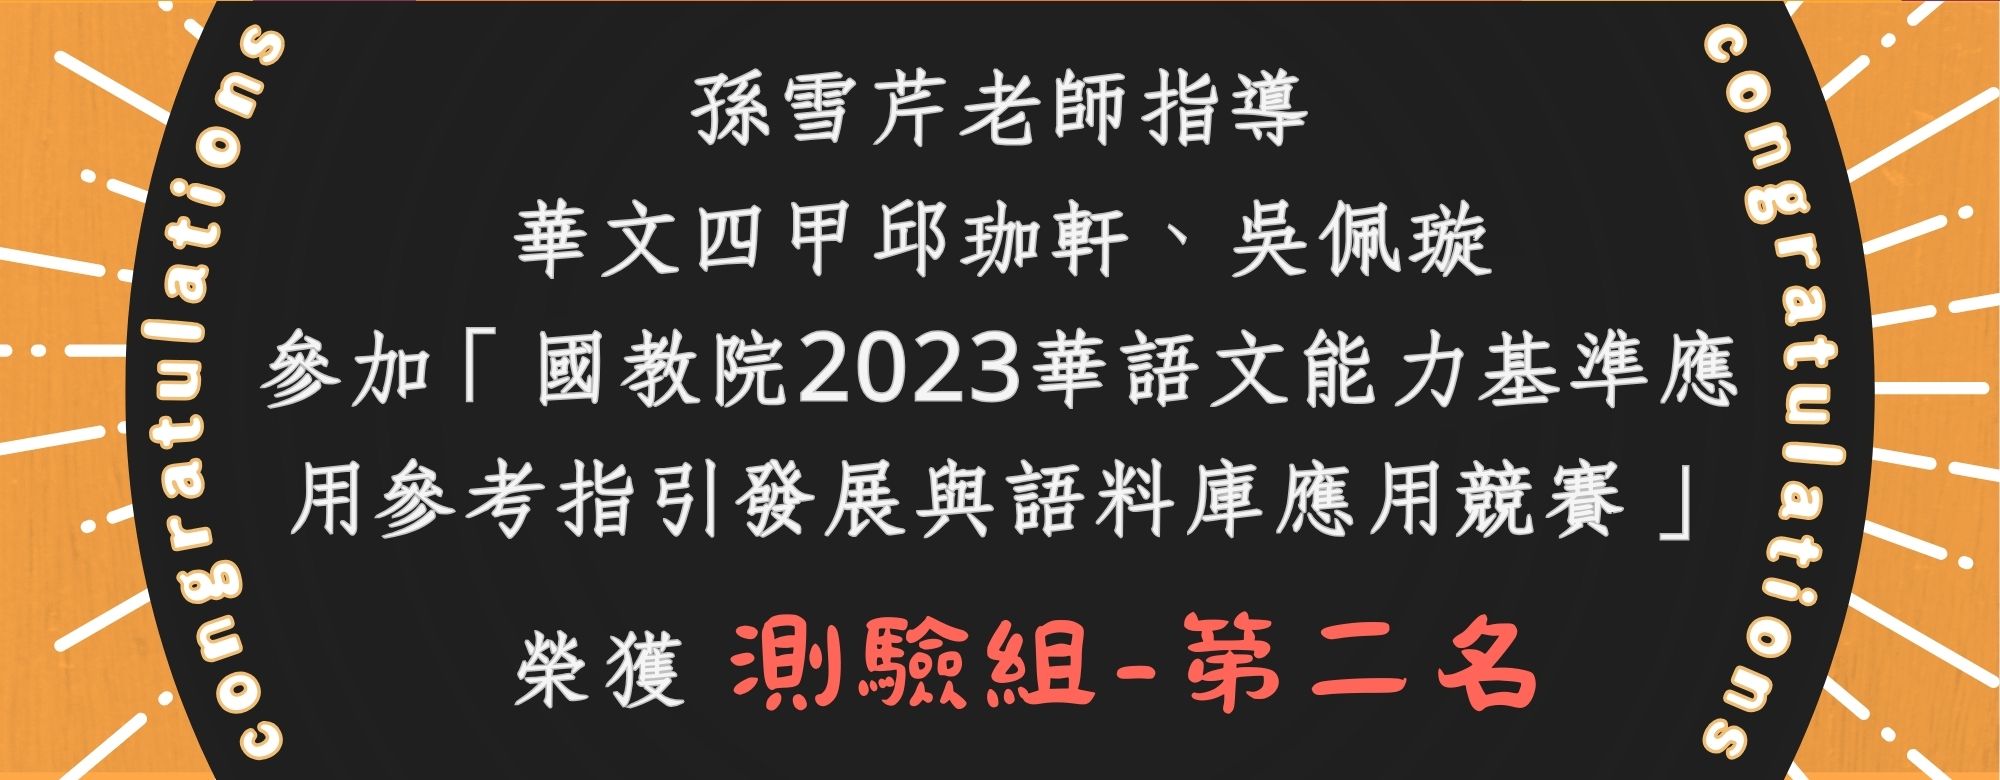 邱珈軒、吳佩璇2023 華語文能力基準應用參考指引與語料庫應用競賽測驗組第二名(另開新視窗)